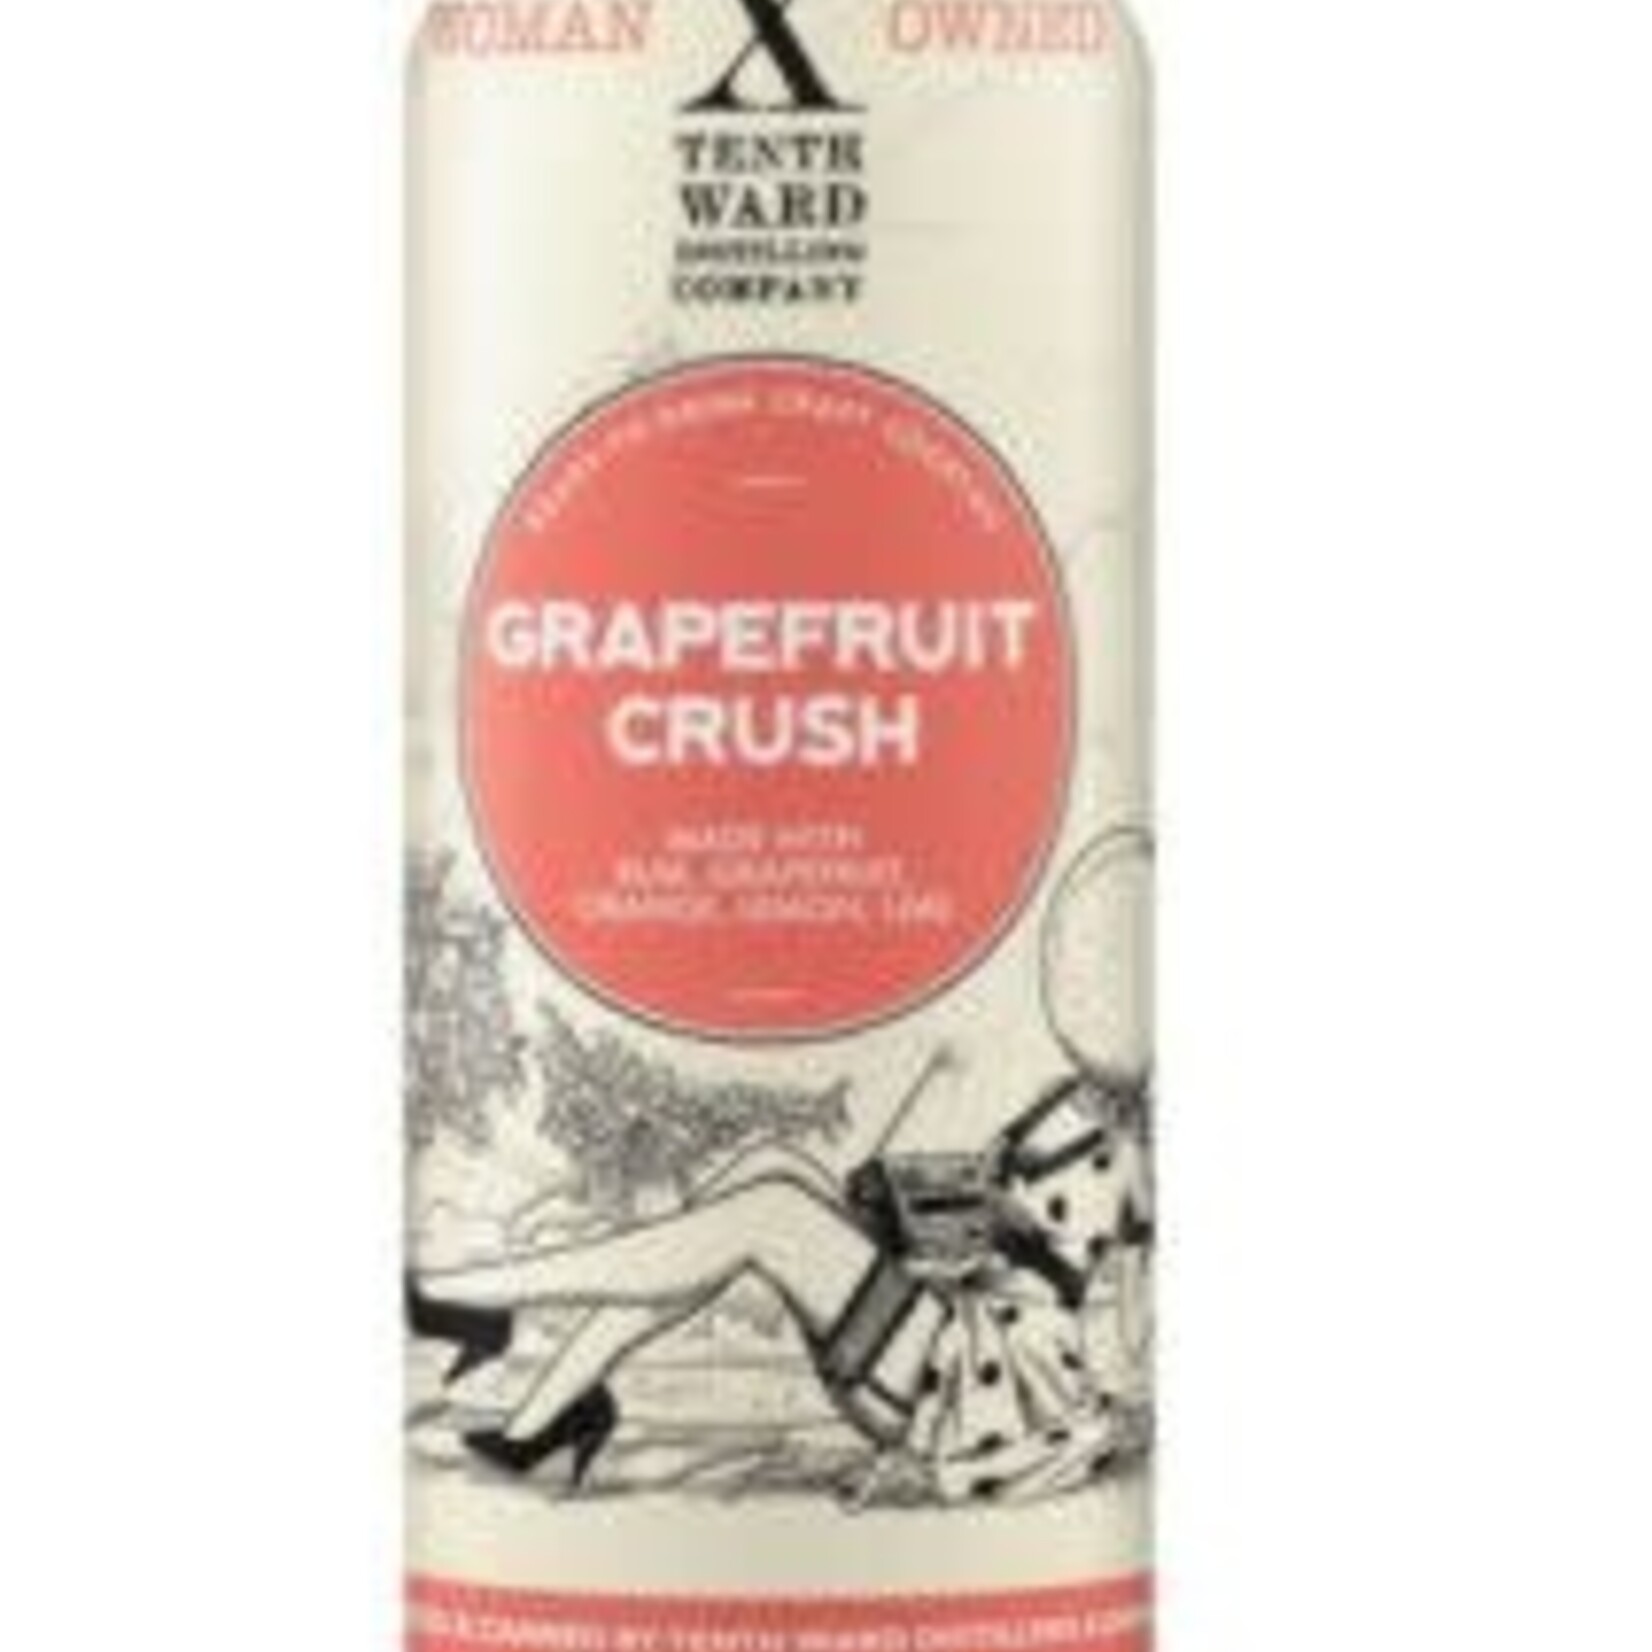 Tenth Ward Grapefruit Crush 4pk CN